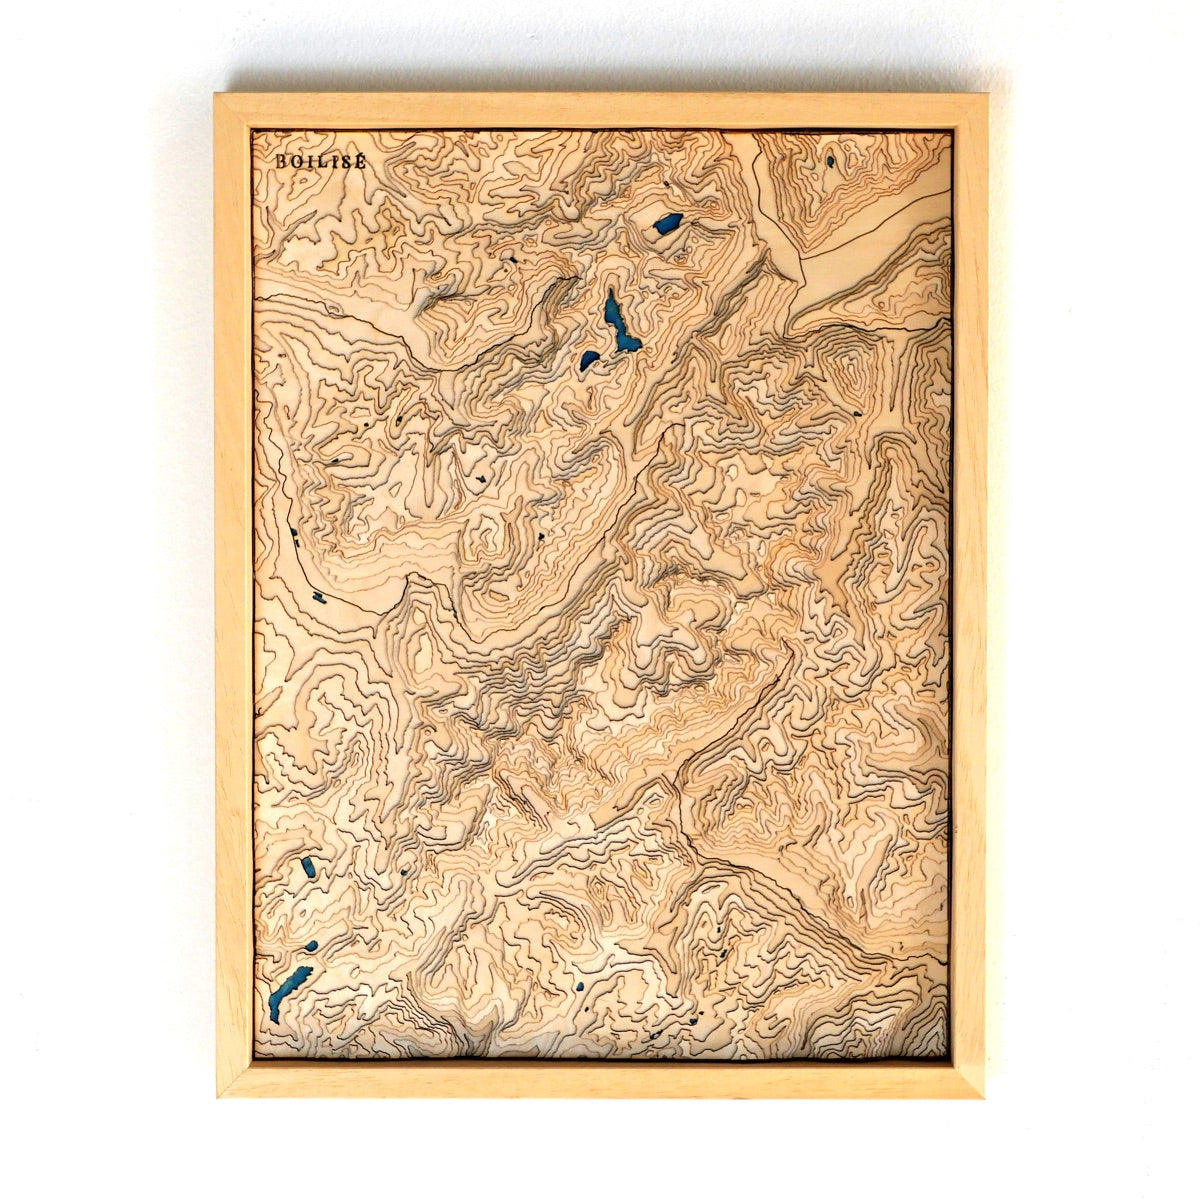 Carte topographique en relief du massif du mont blanc avec lacs bleus marine dans un cadre standard brut